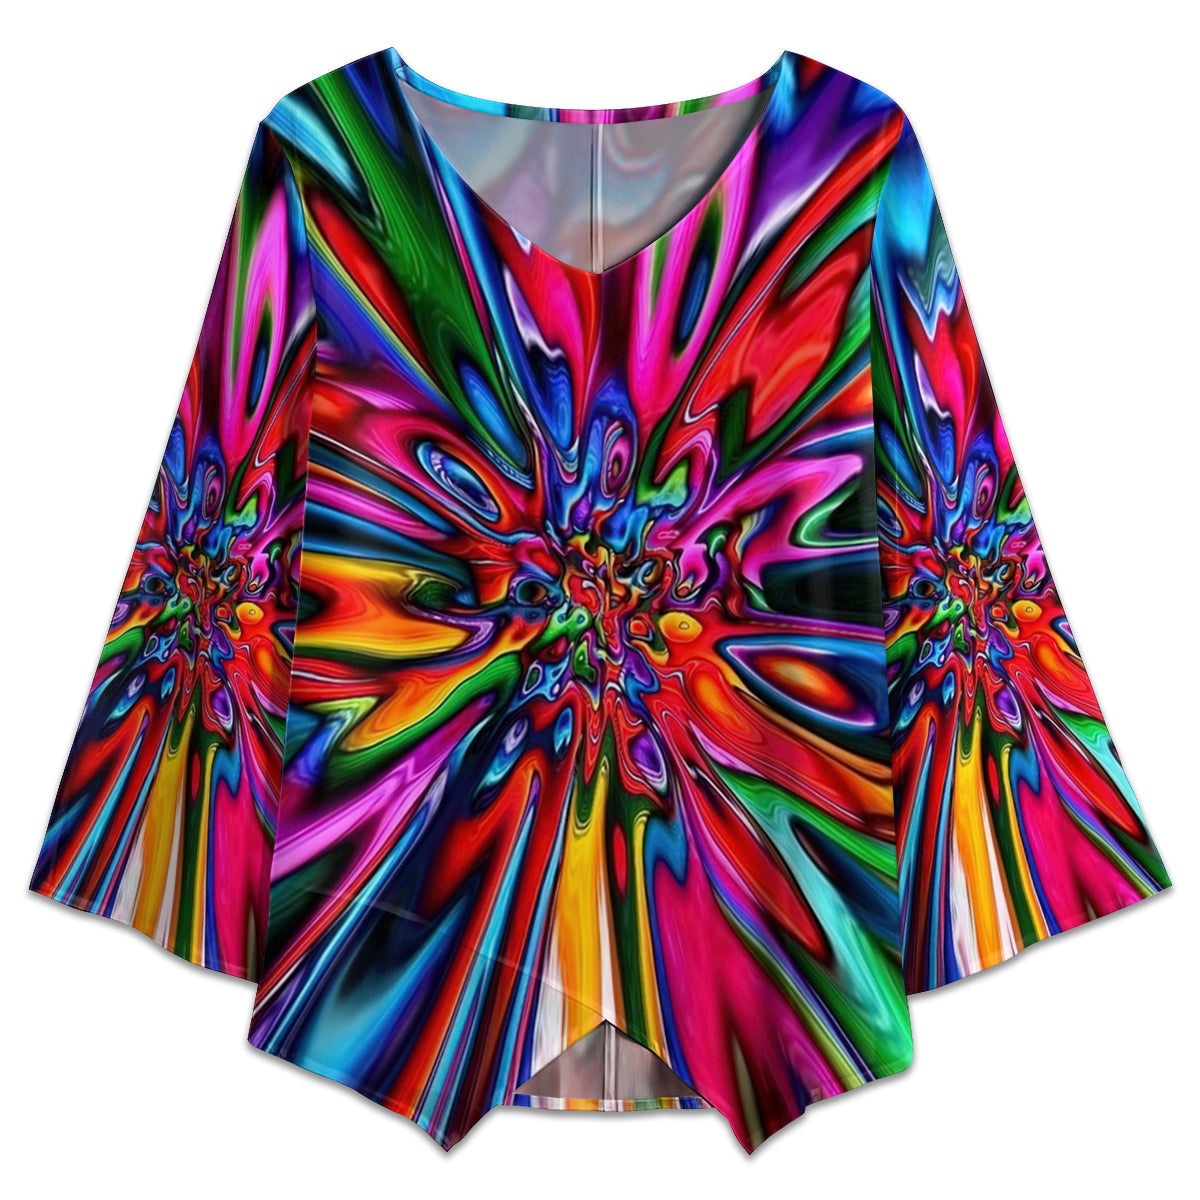 S Hippie Tie Dye Colorful - V-neck T-shirt - Owls Matrix LTD